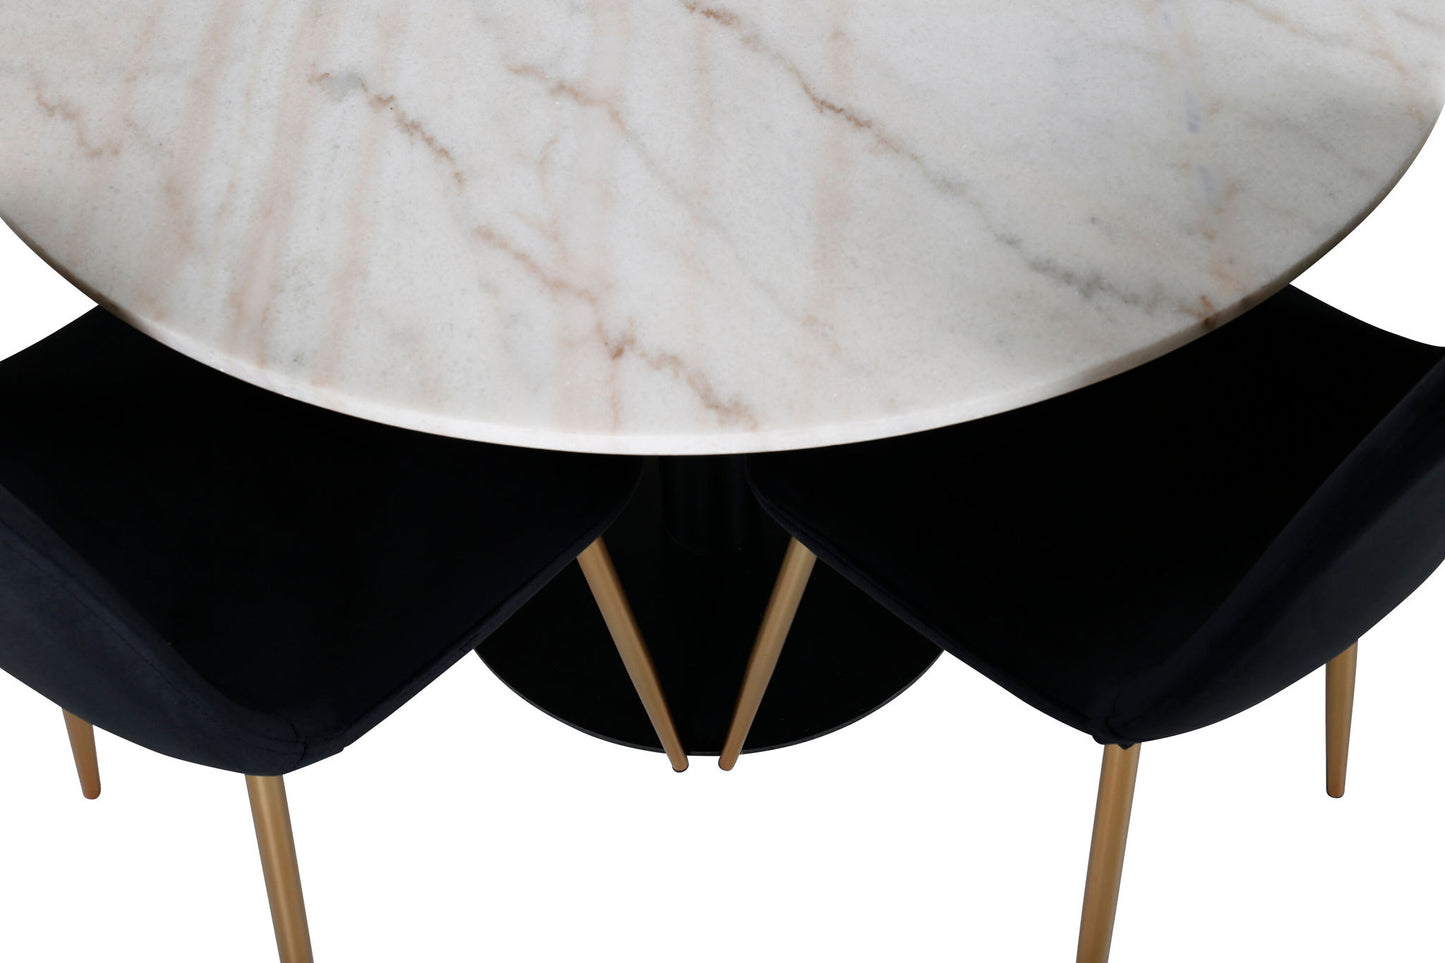 Estelle - Spisebord, rund 106cm Hvid marble / Sorte ben - Polar Stol - Sort velour / Mat messing ben 4